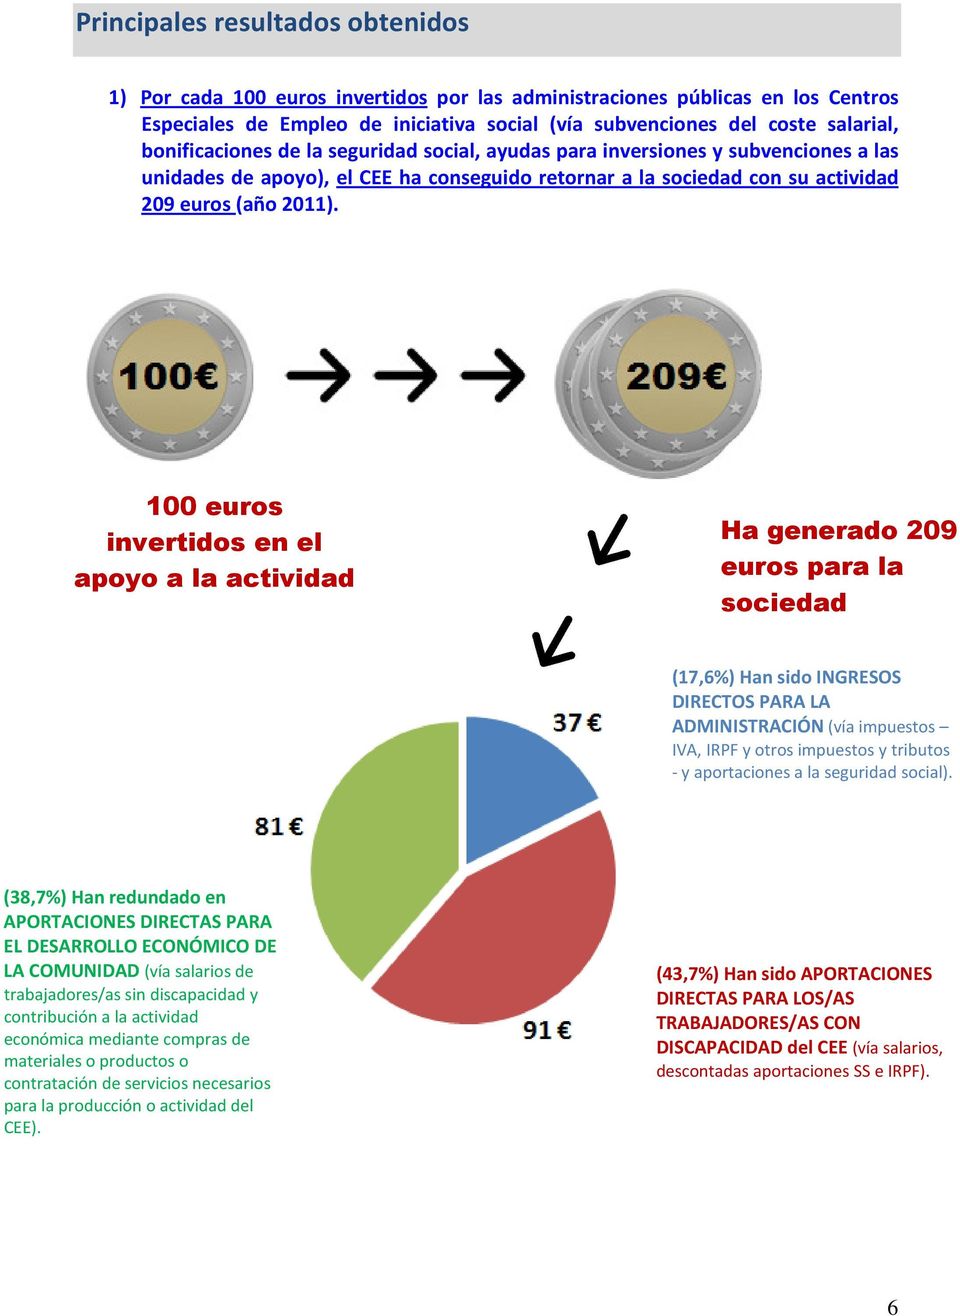 100 euros invertidos en el apoyo a la actividad del CEE Ha generado 209 euros para la sociedad (17,6%) Han sido INGRESOS DIRECTOS PARA LA ADMINISTRACIÓN (vía impuestos IVA, IRPF y otros impuestos y